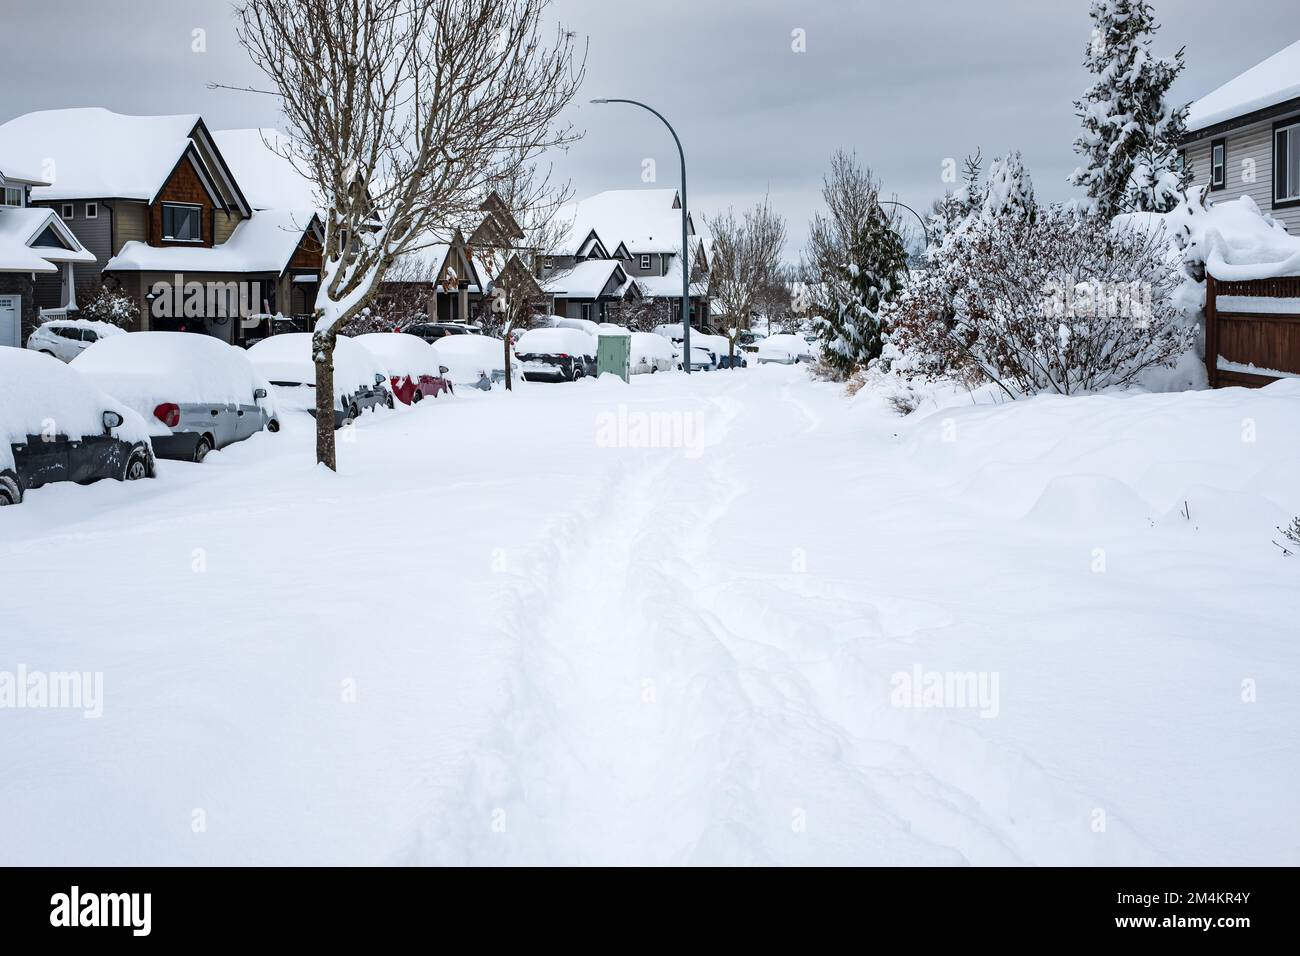 Strada della città coperta di neve durante una forte nevicata. Molta neve sul marciapiede, automobili e rami d'albero. Inverno città clima freddo neve. Area del carter i Foto Stock